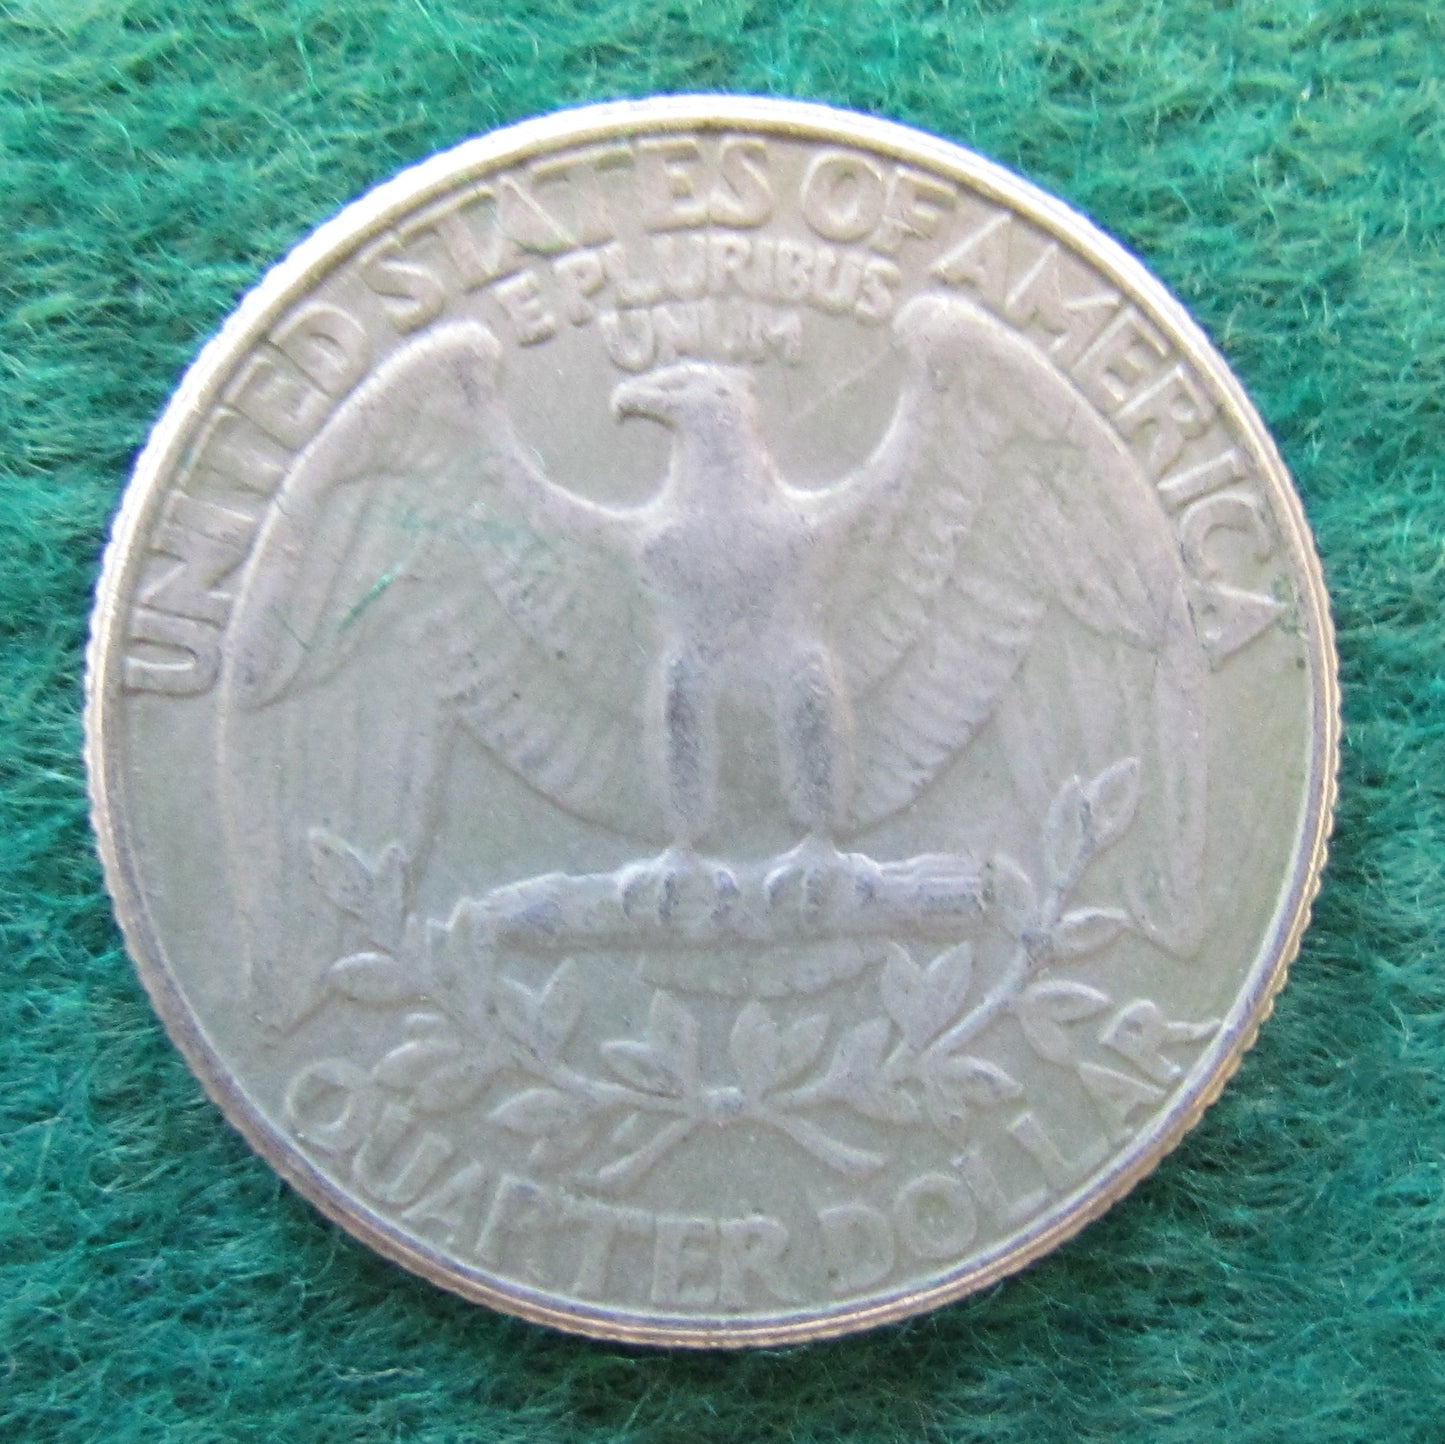 USA American 1986 P Quarter Washington Coin - Circulated